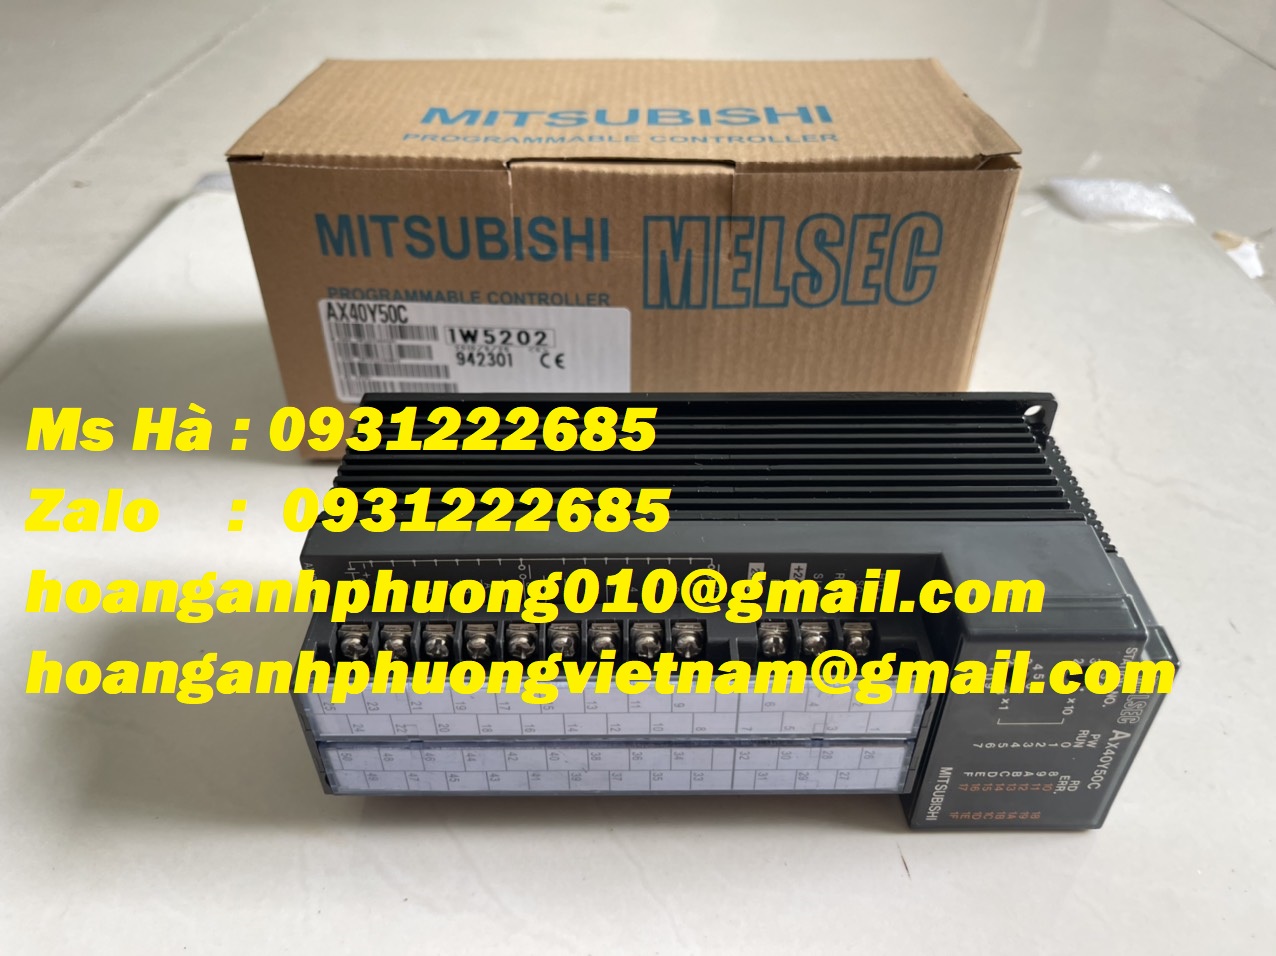 Melsec A series chính hãng mitsubishi AX40Y50C - hàng mới 100%